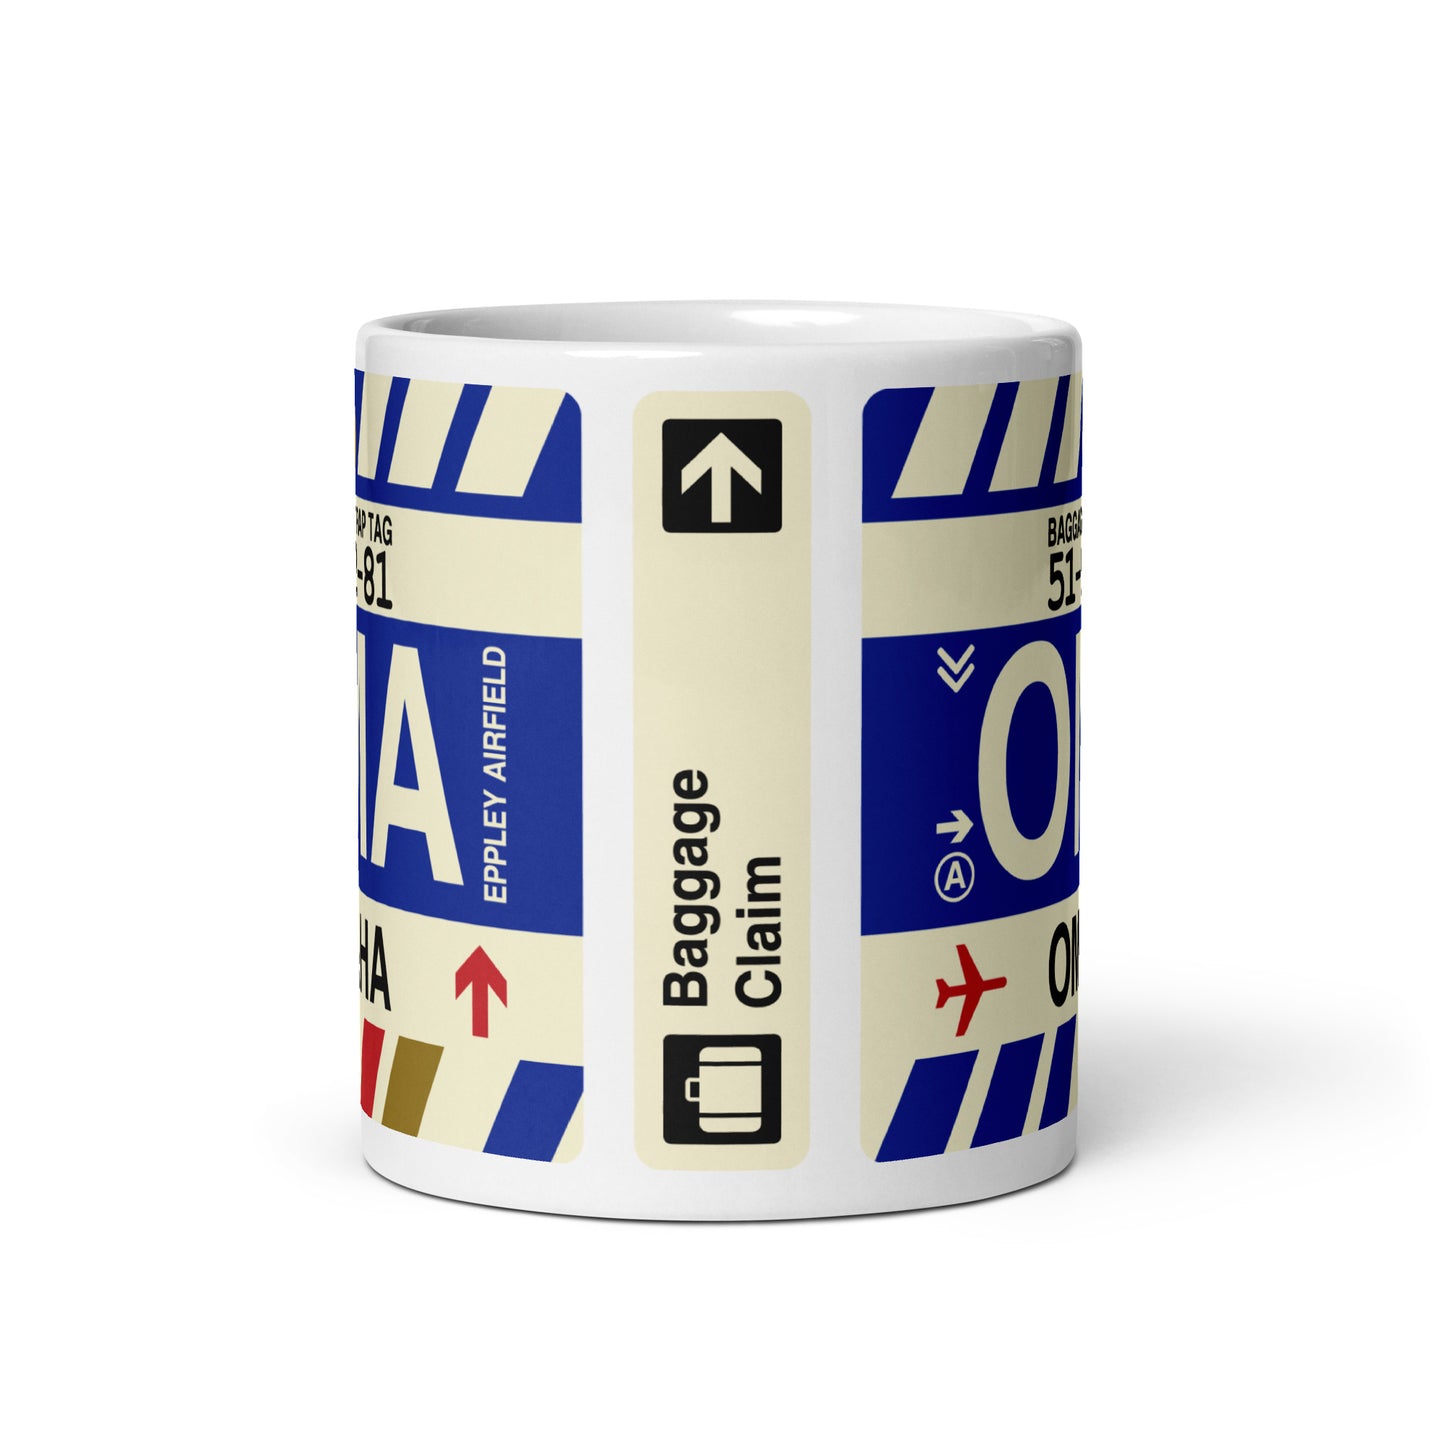 Travel-Themed Coffee Mug • OMA Omaha • YHM Designs - Image 02